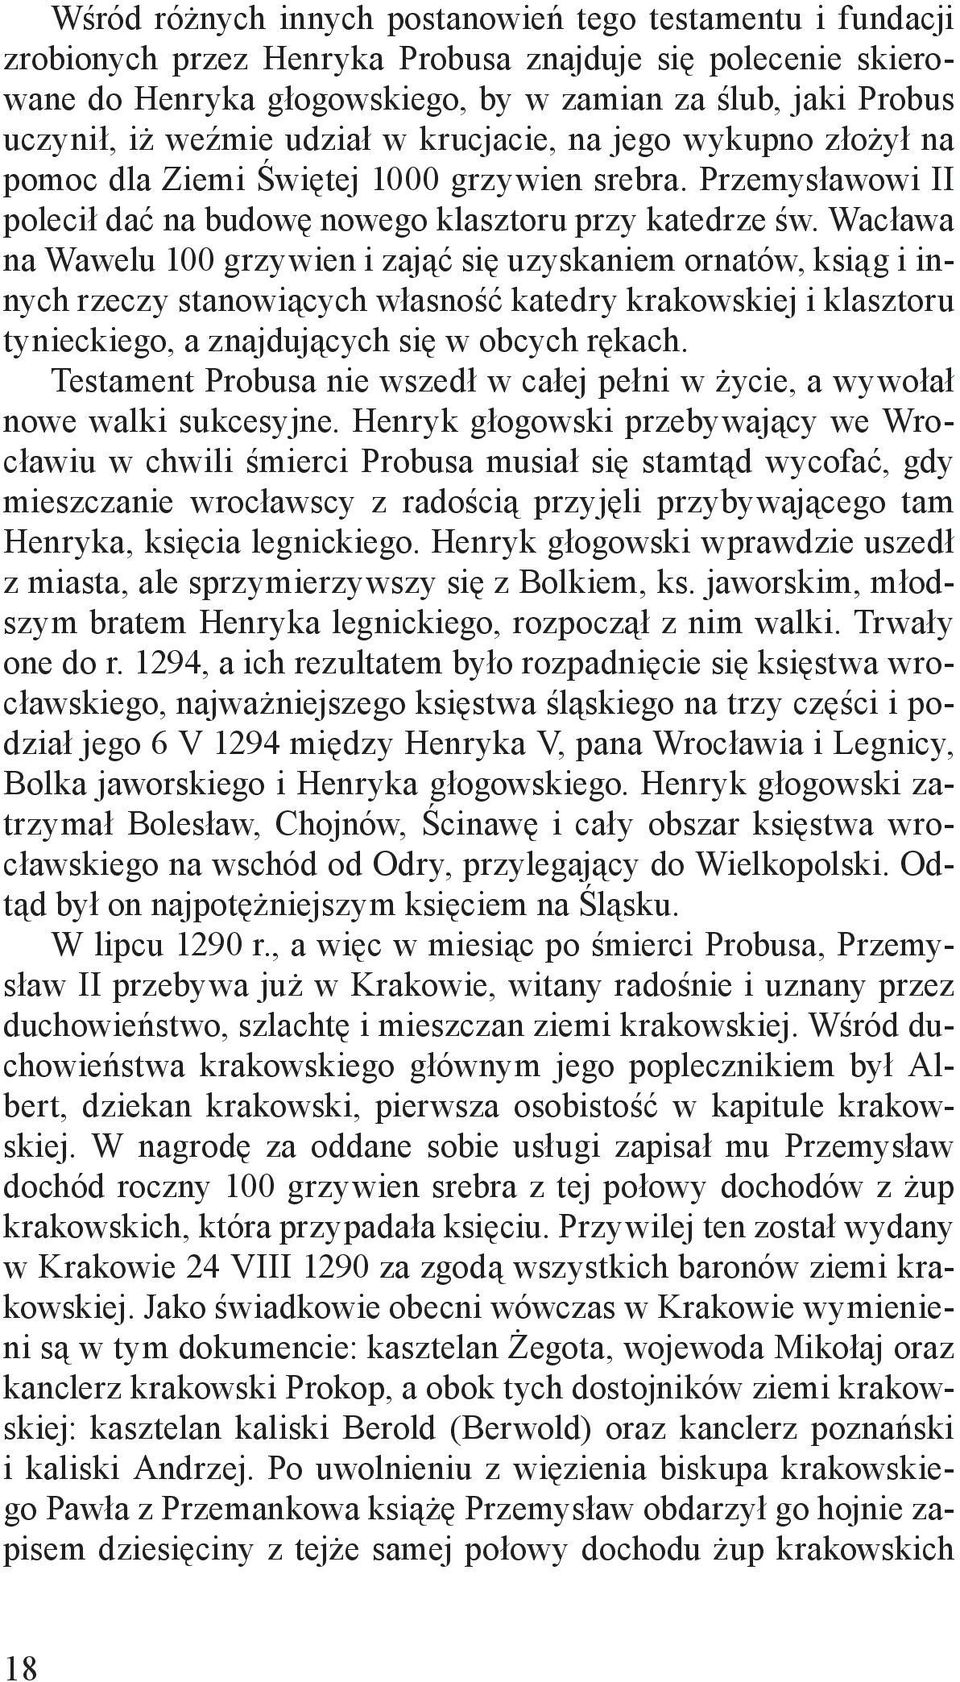 Wacława na Wawelu 100 grzywien i zająć się uzyskaniem ornatów, ksiąg i innych rzeczy stanowiących własność katedry krakowskiej i klasztoru tynieckiego, a znajdujących się w obcych rękach.